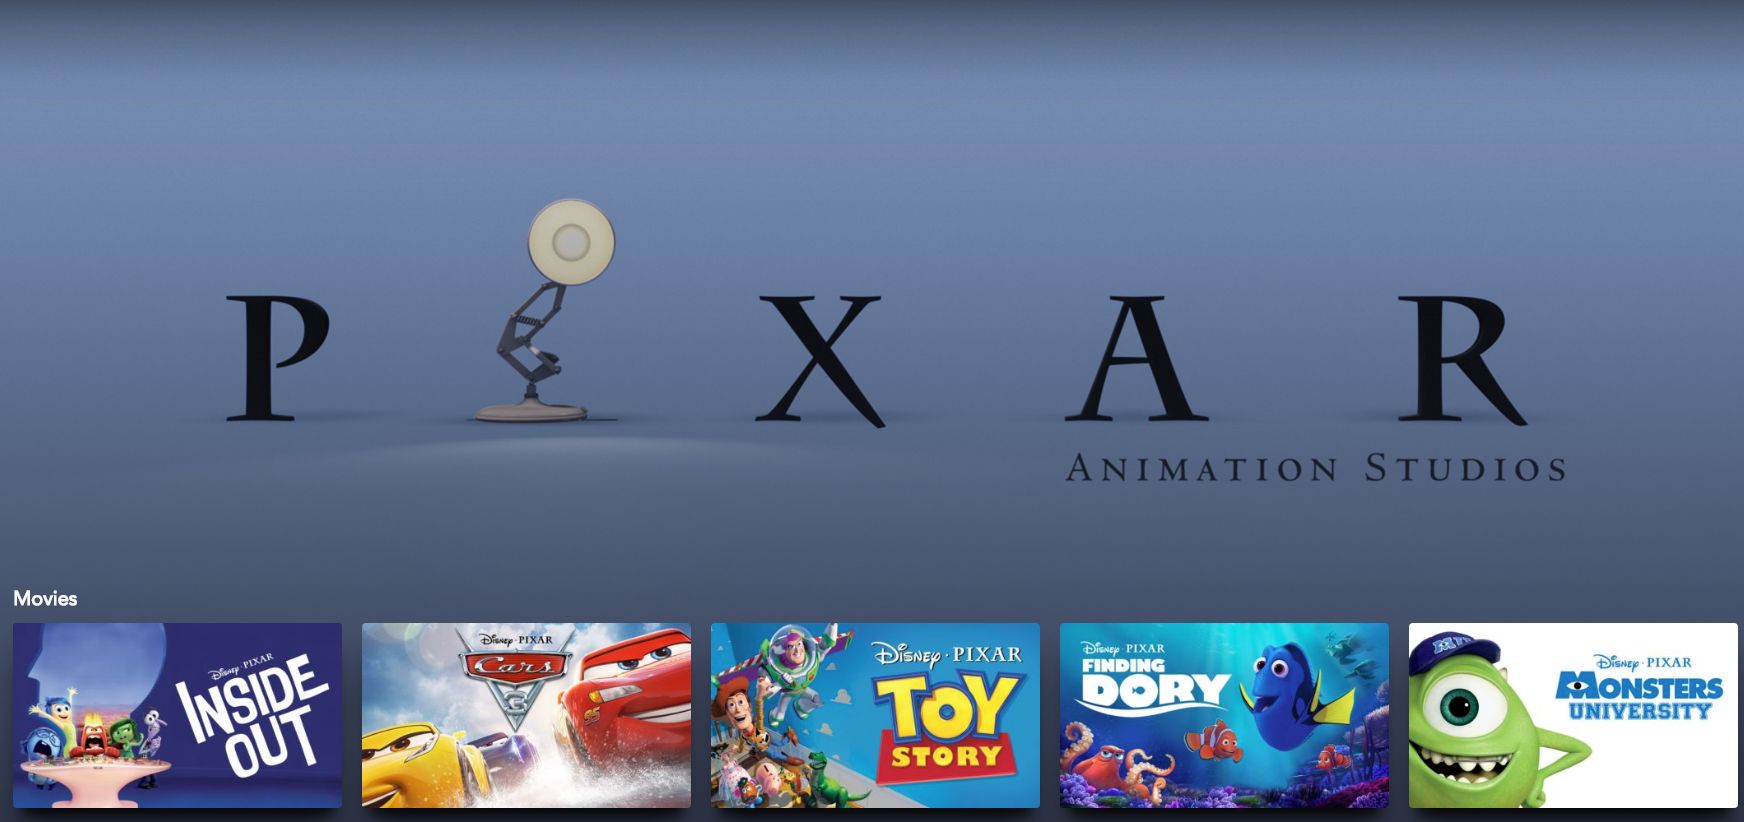 Every new Pixar film